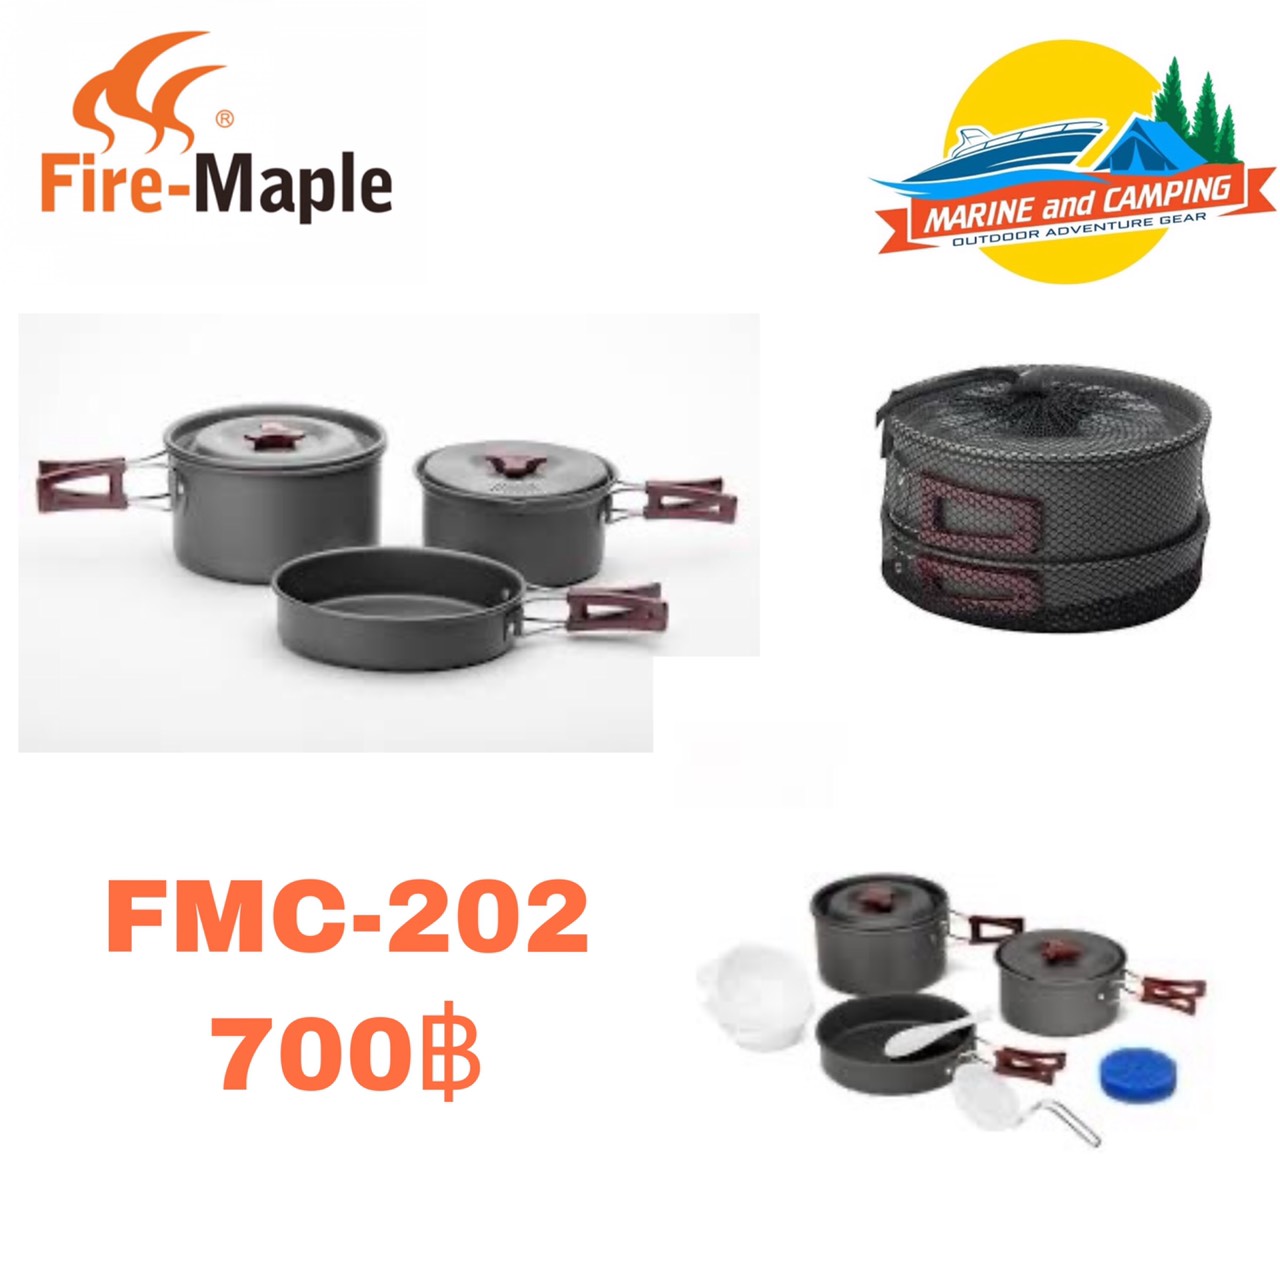 FireMaple FMC-202 Cookware